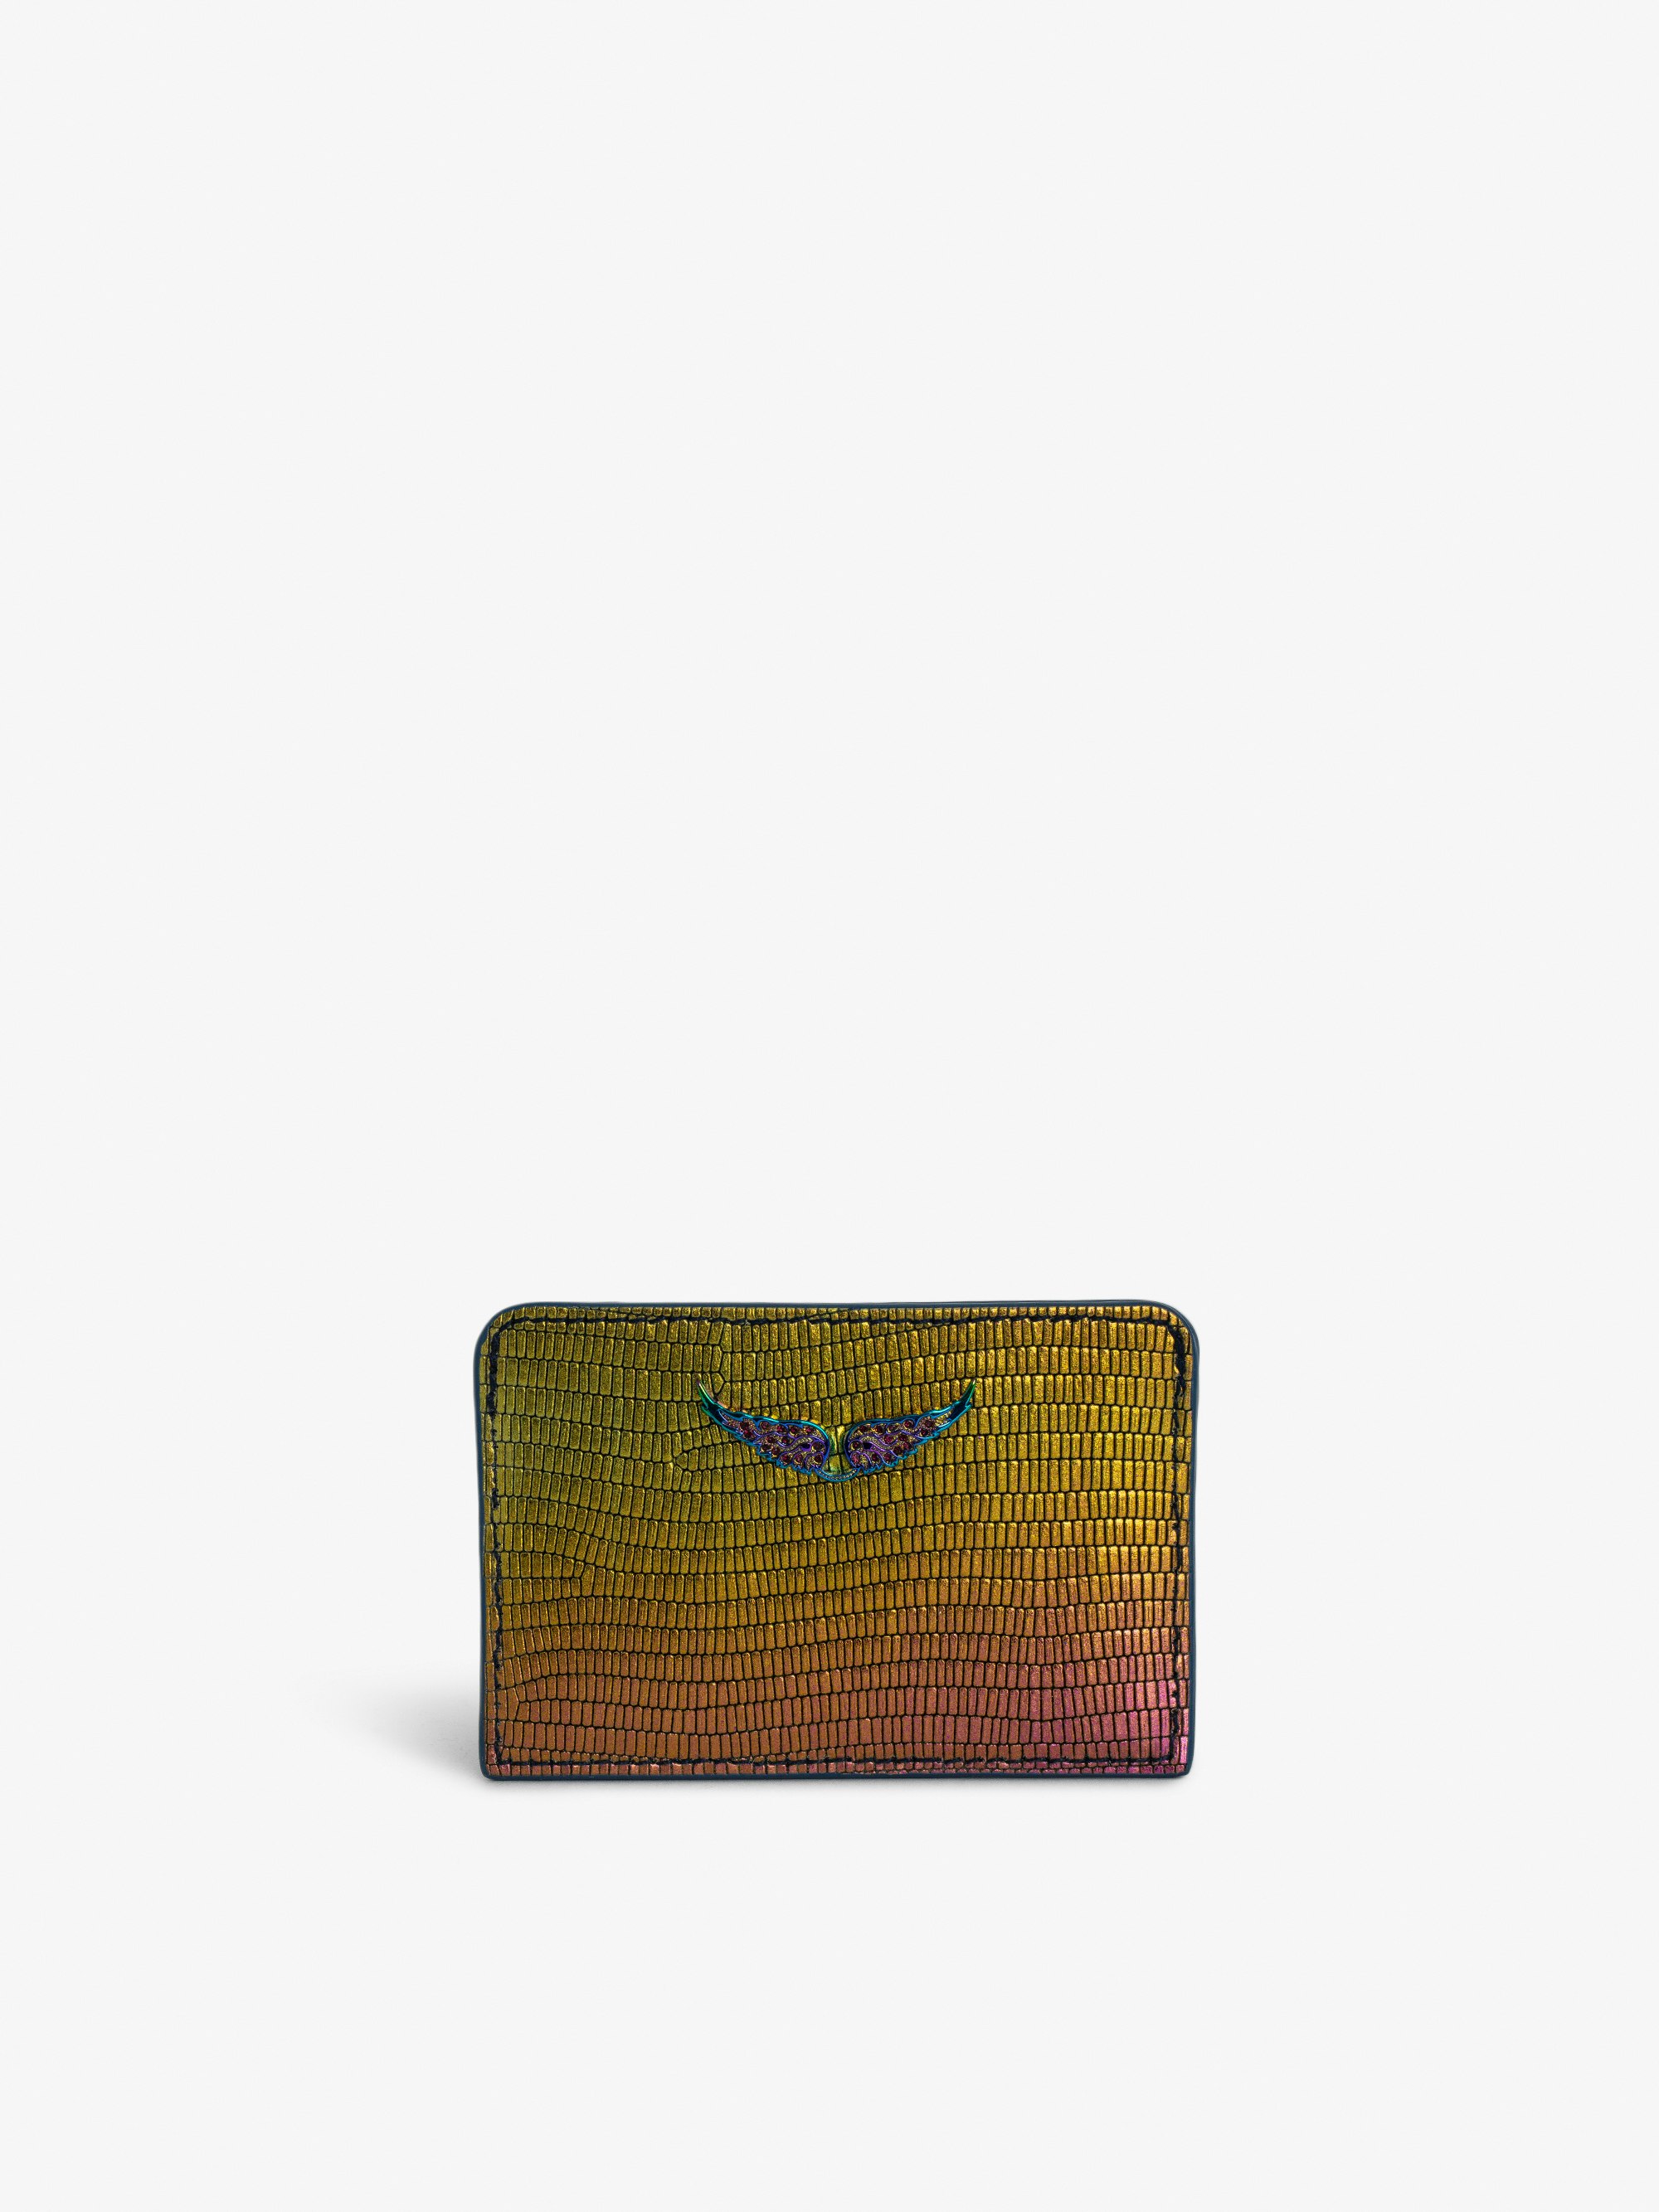 Portacarte ZV Pass Goffrato Metallizzato - Portacarte in pelle metallizzata goffrata effetto iguana arcobaleno con charm a forma di ali in strass.